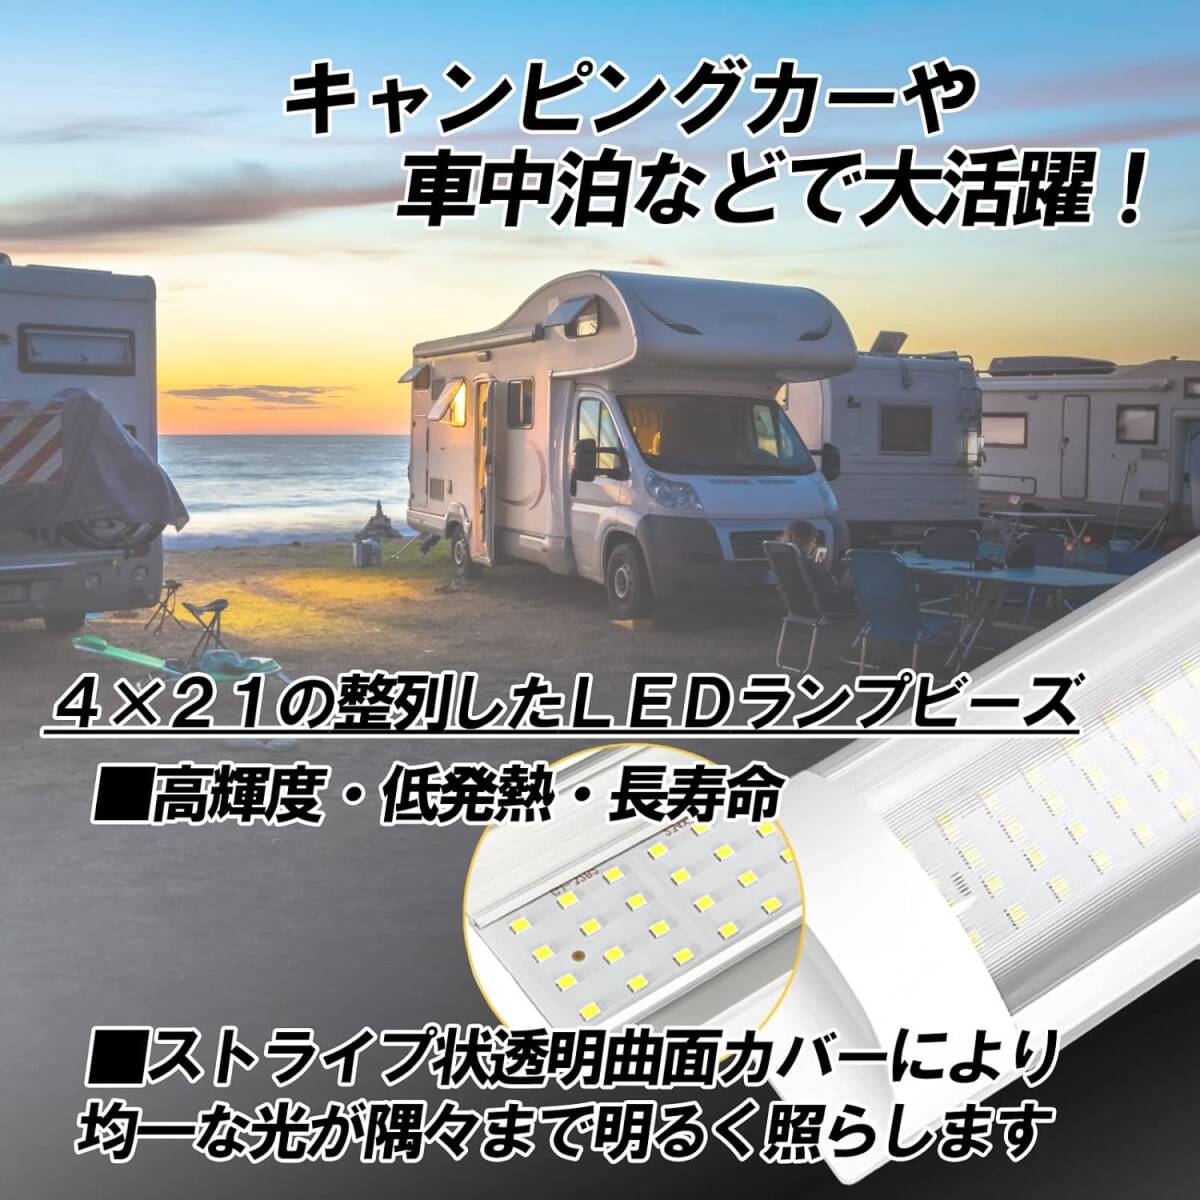 [Dr.nao] 車用 LEDルームランプ ledテープライト 車 ルームライト シーリングライト ledライト トランク ライト_画像3